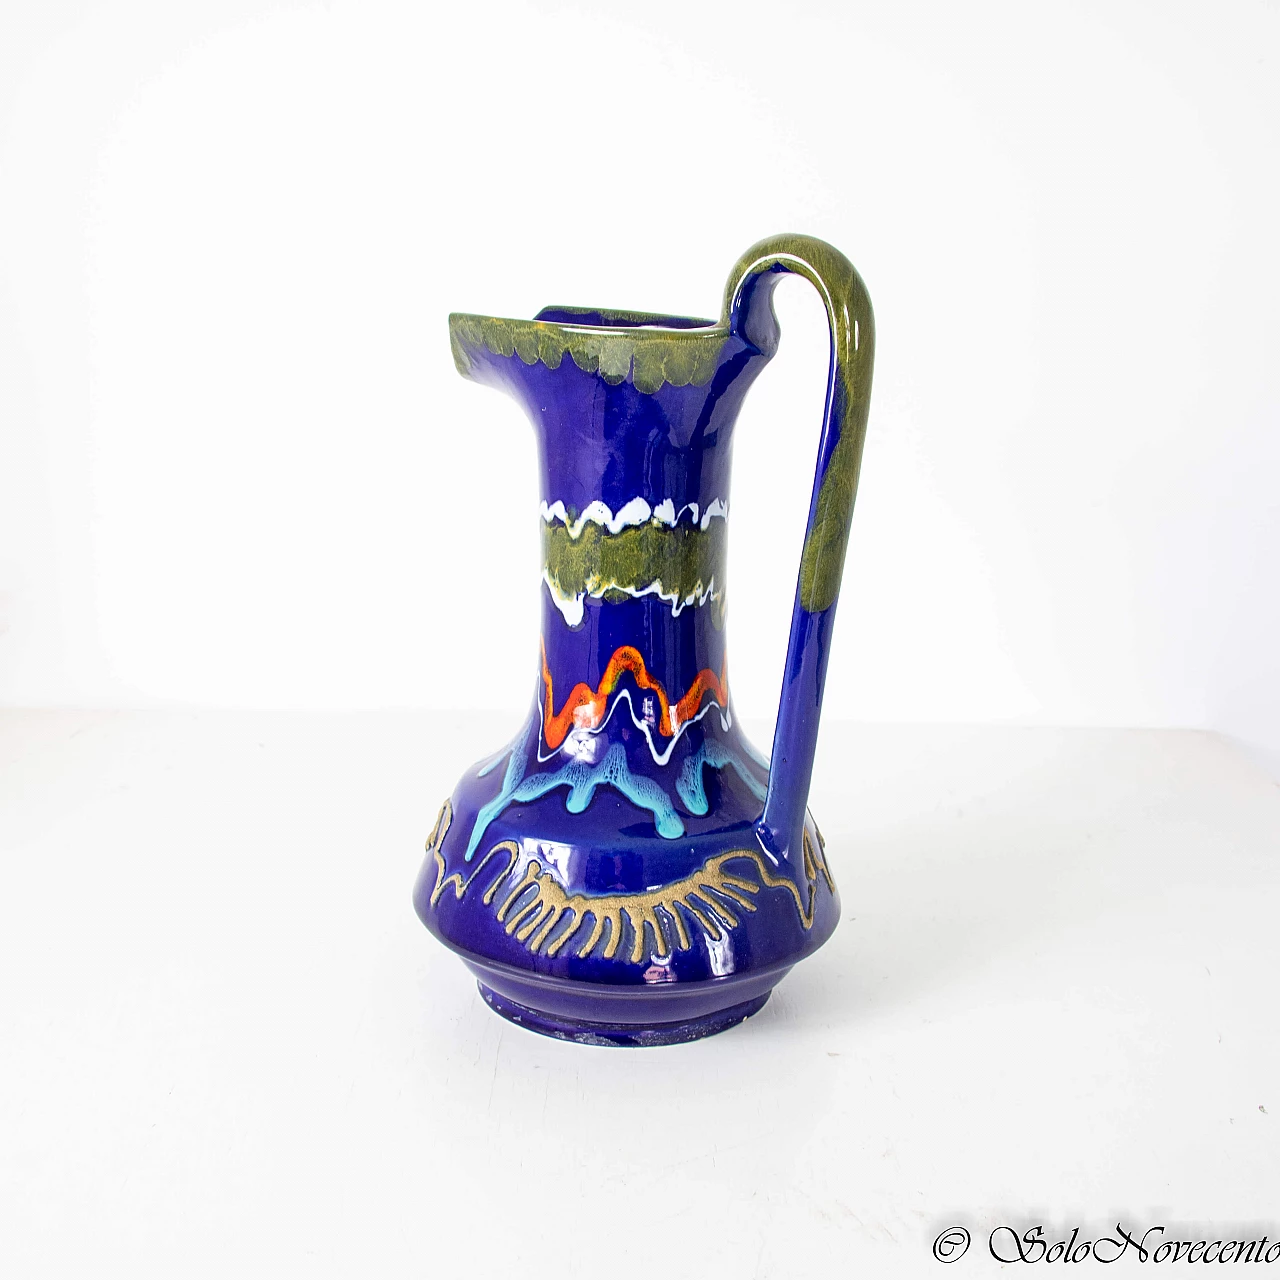 Glazed ceramic pitcher by Roberto Rigon, 1960s 1223930